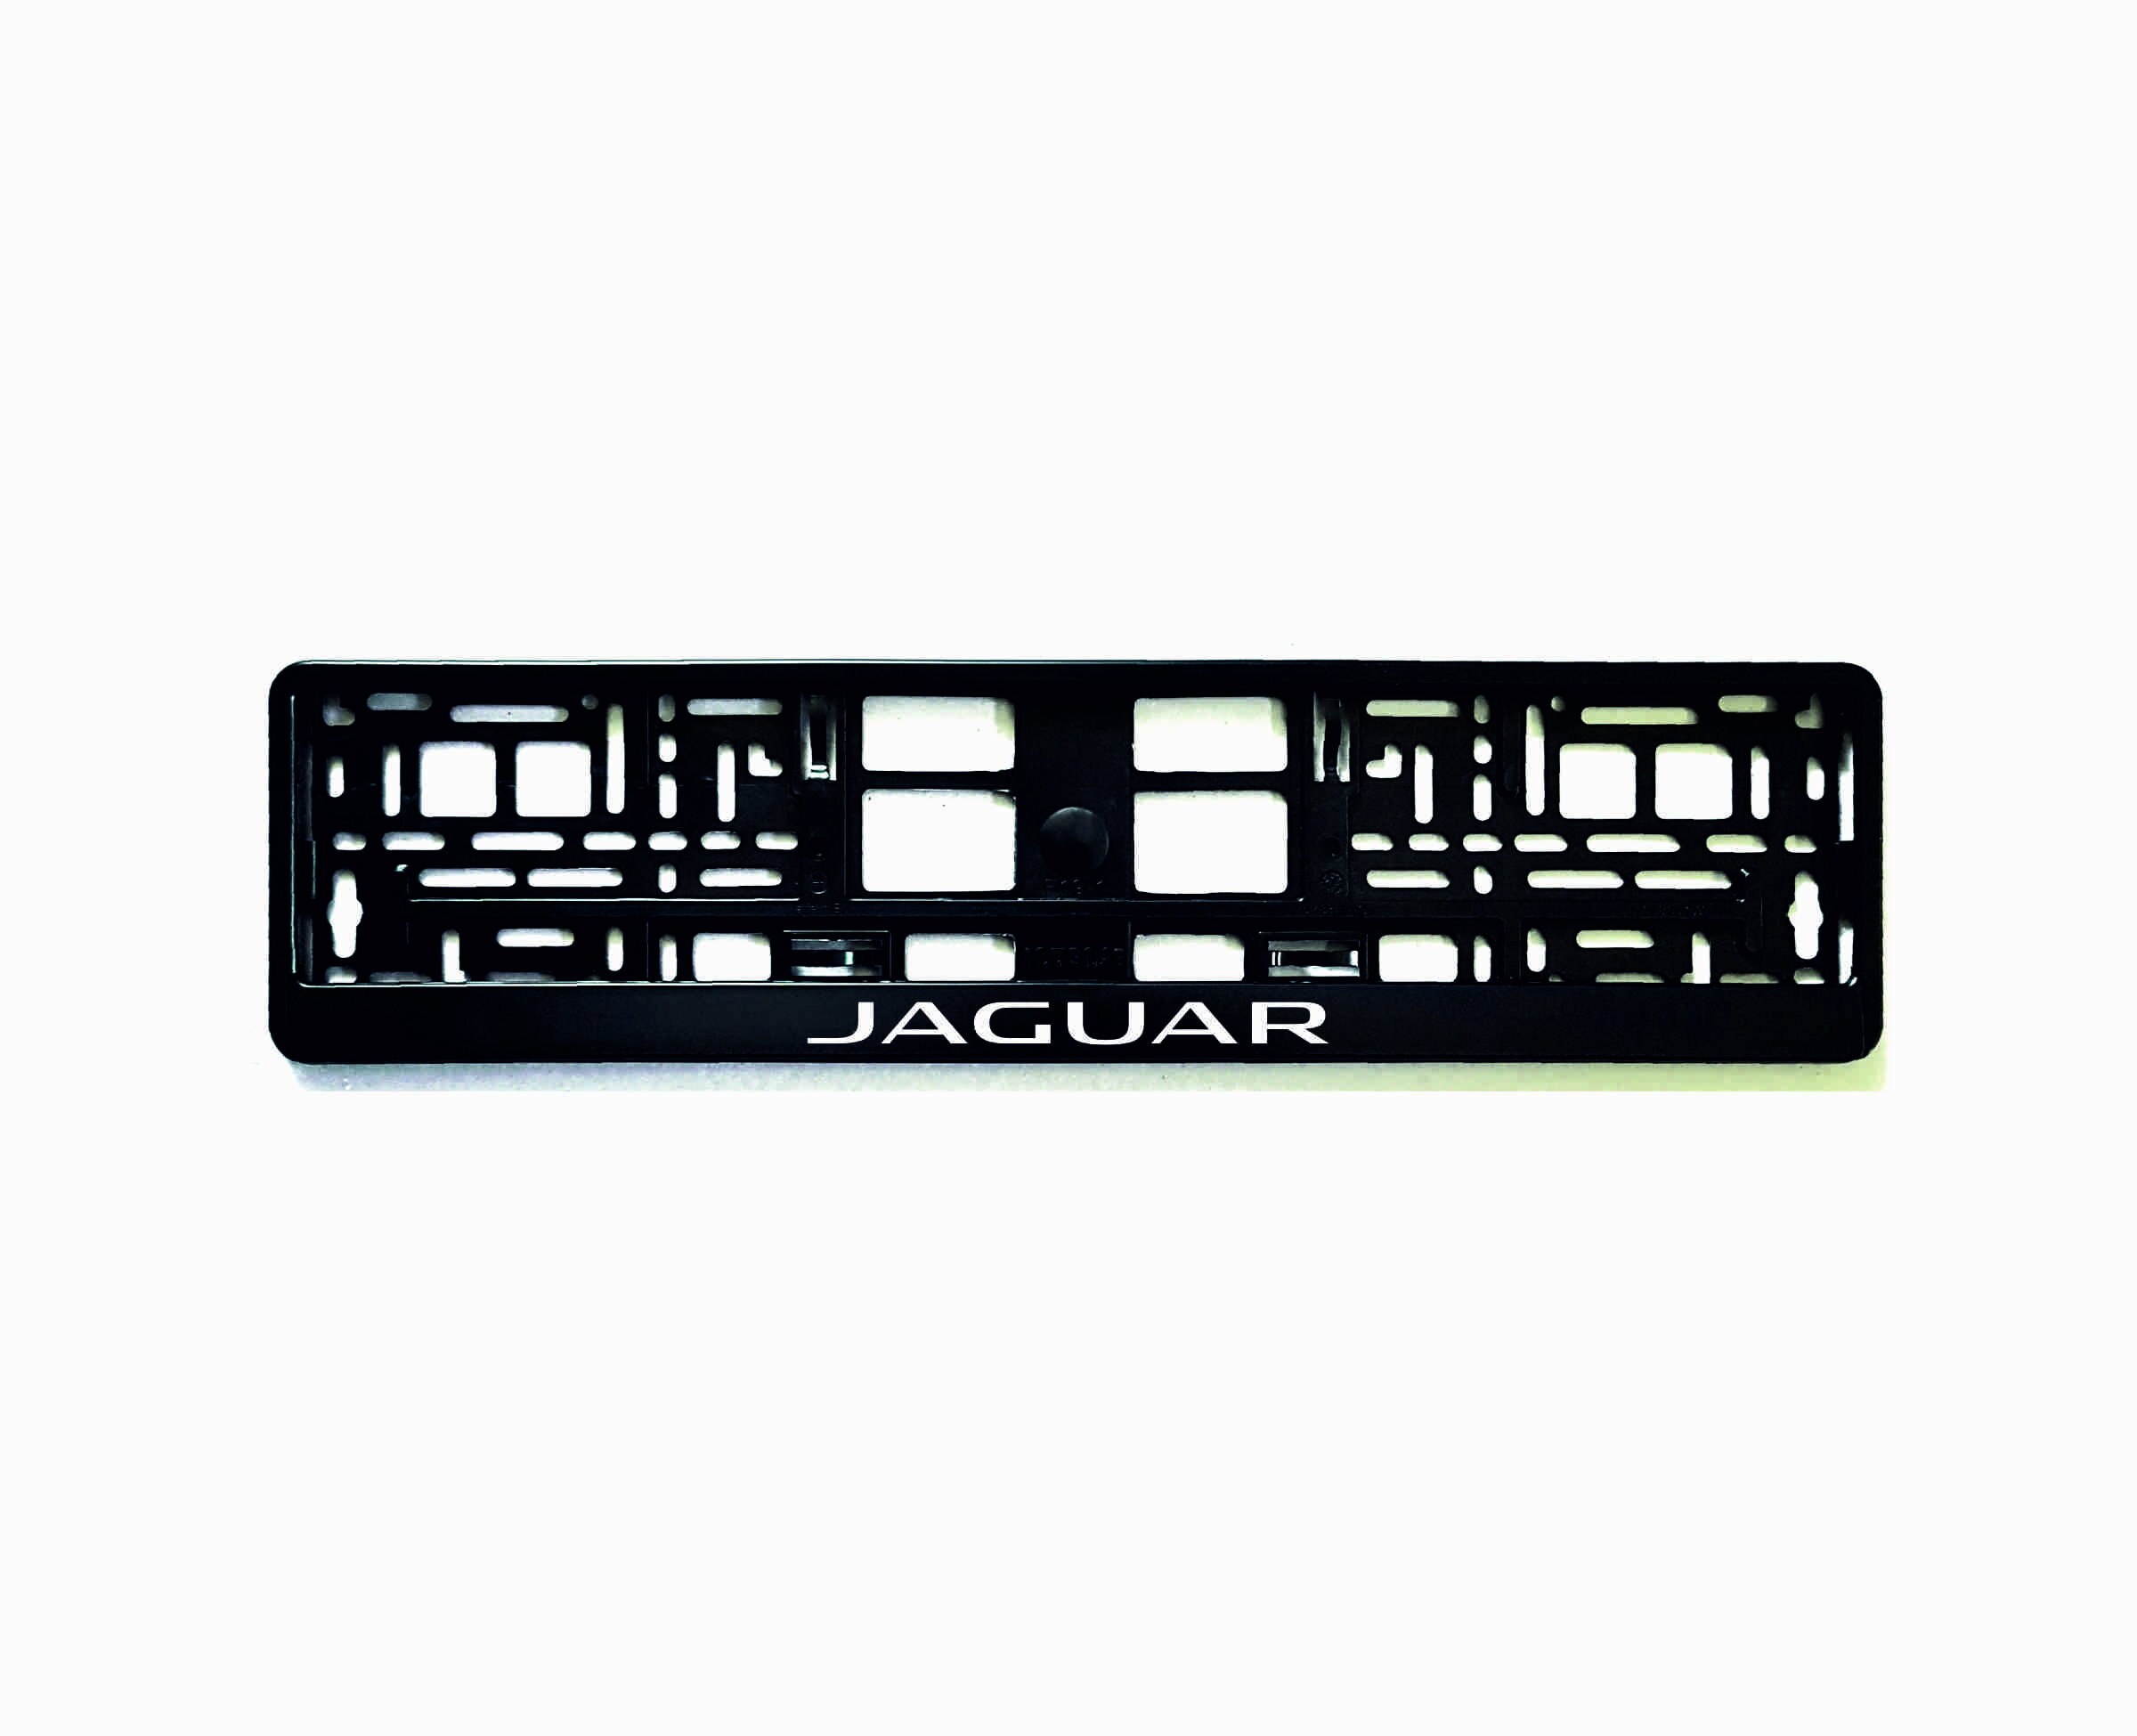 2PCS License Plate Frames for Jaguar, Premium Aluminum Alloy